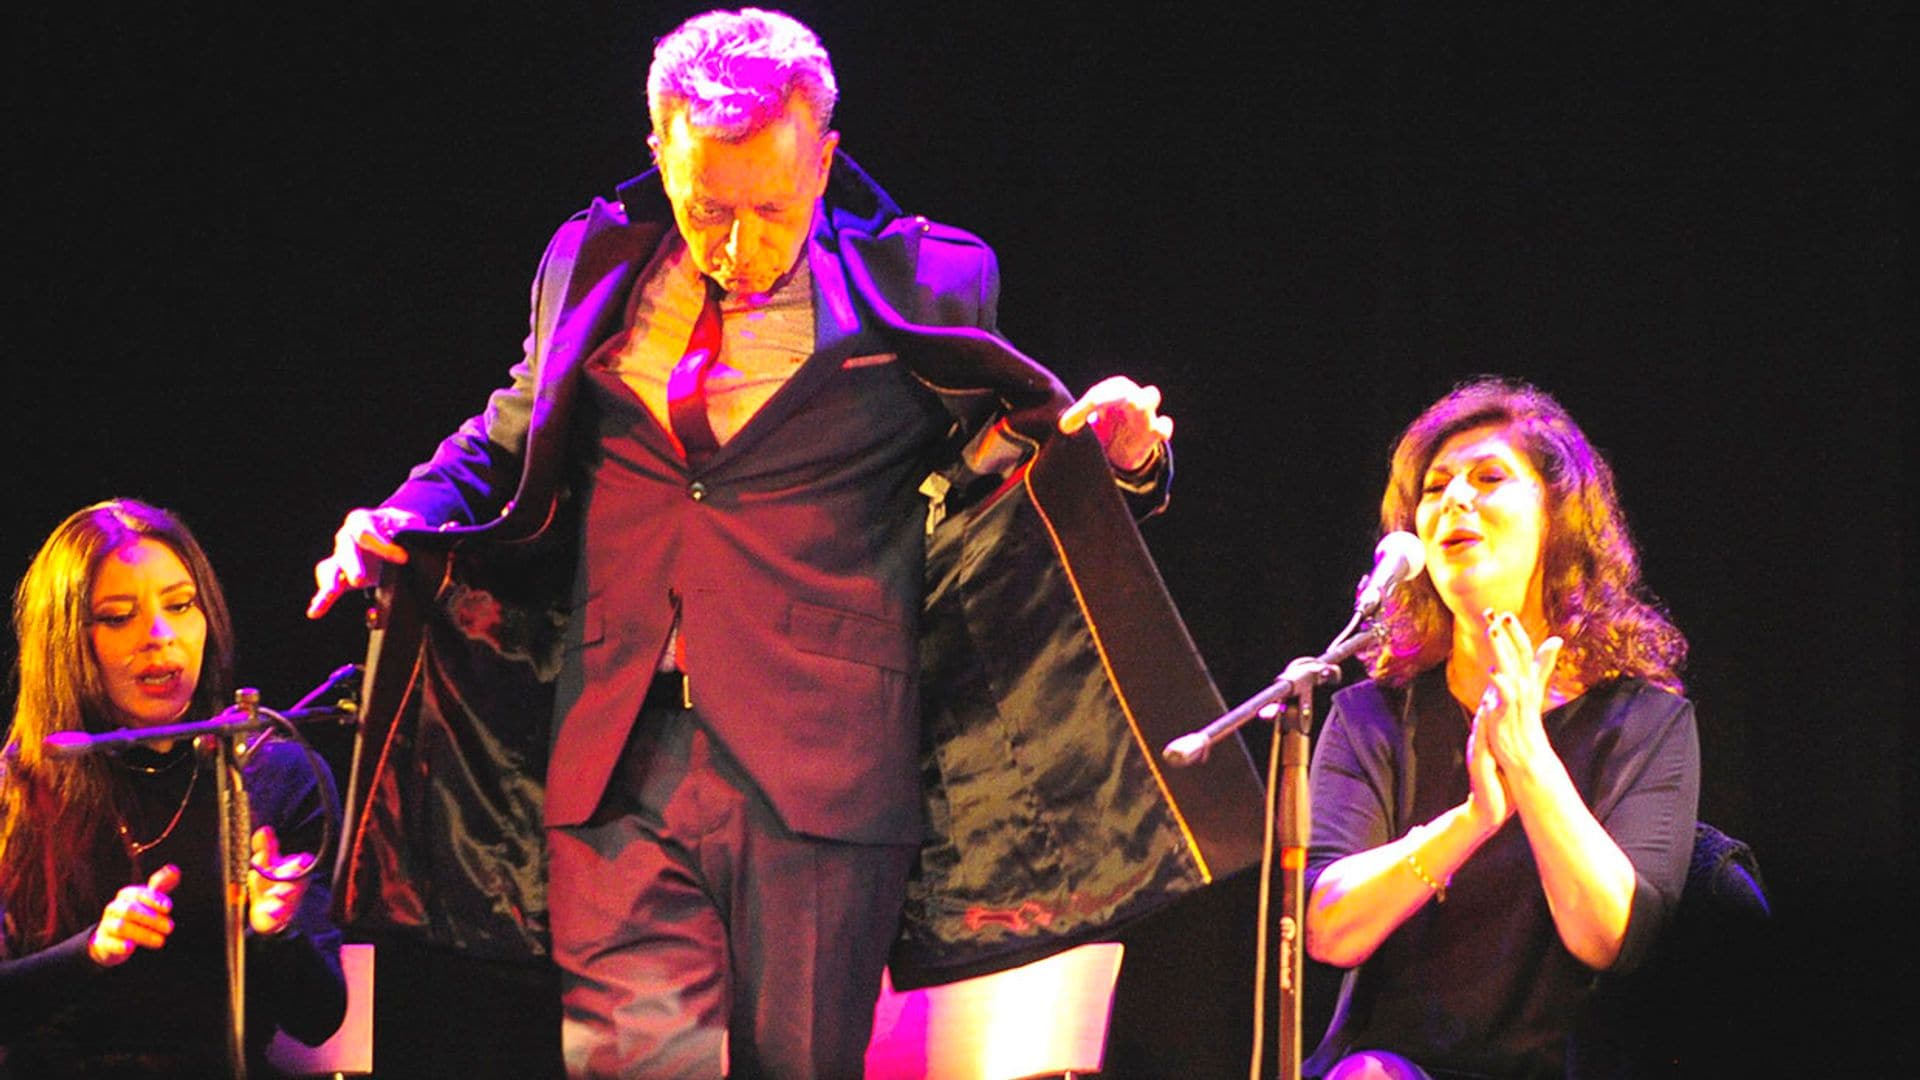 La explosión de felicidad de Ortega Cano que se arranca a bailar flamenco con su amiga Isabel Luna